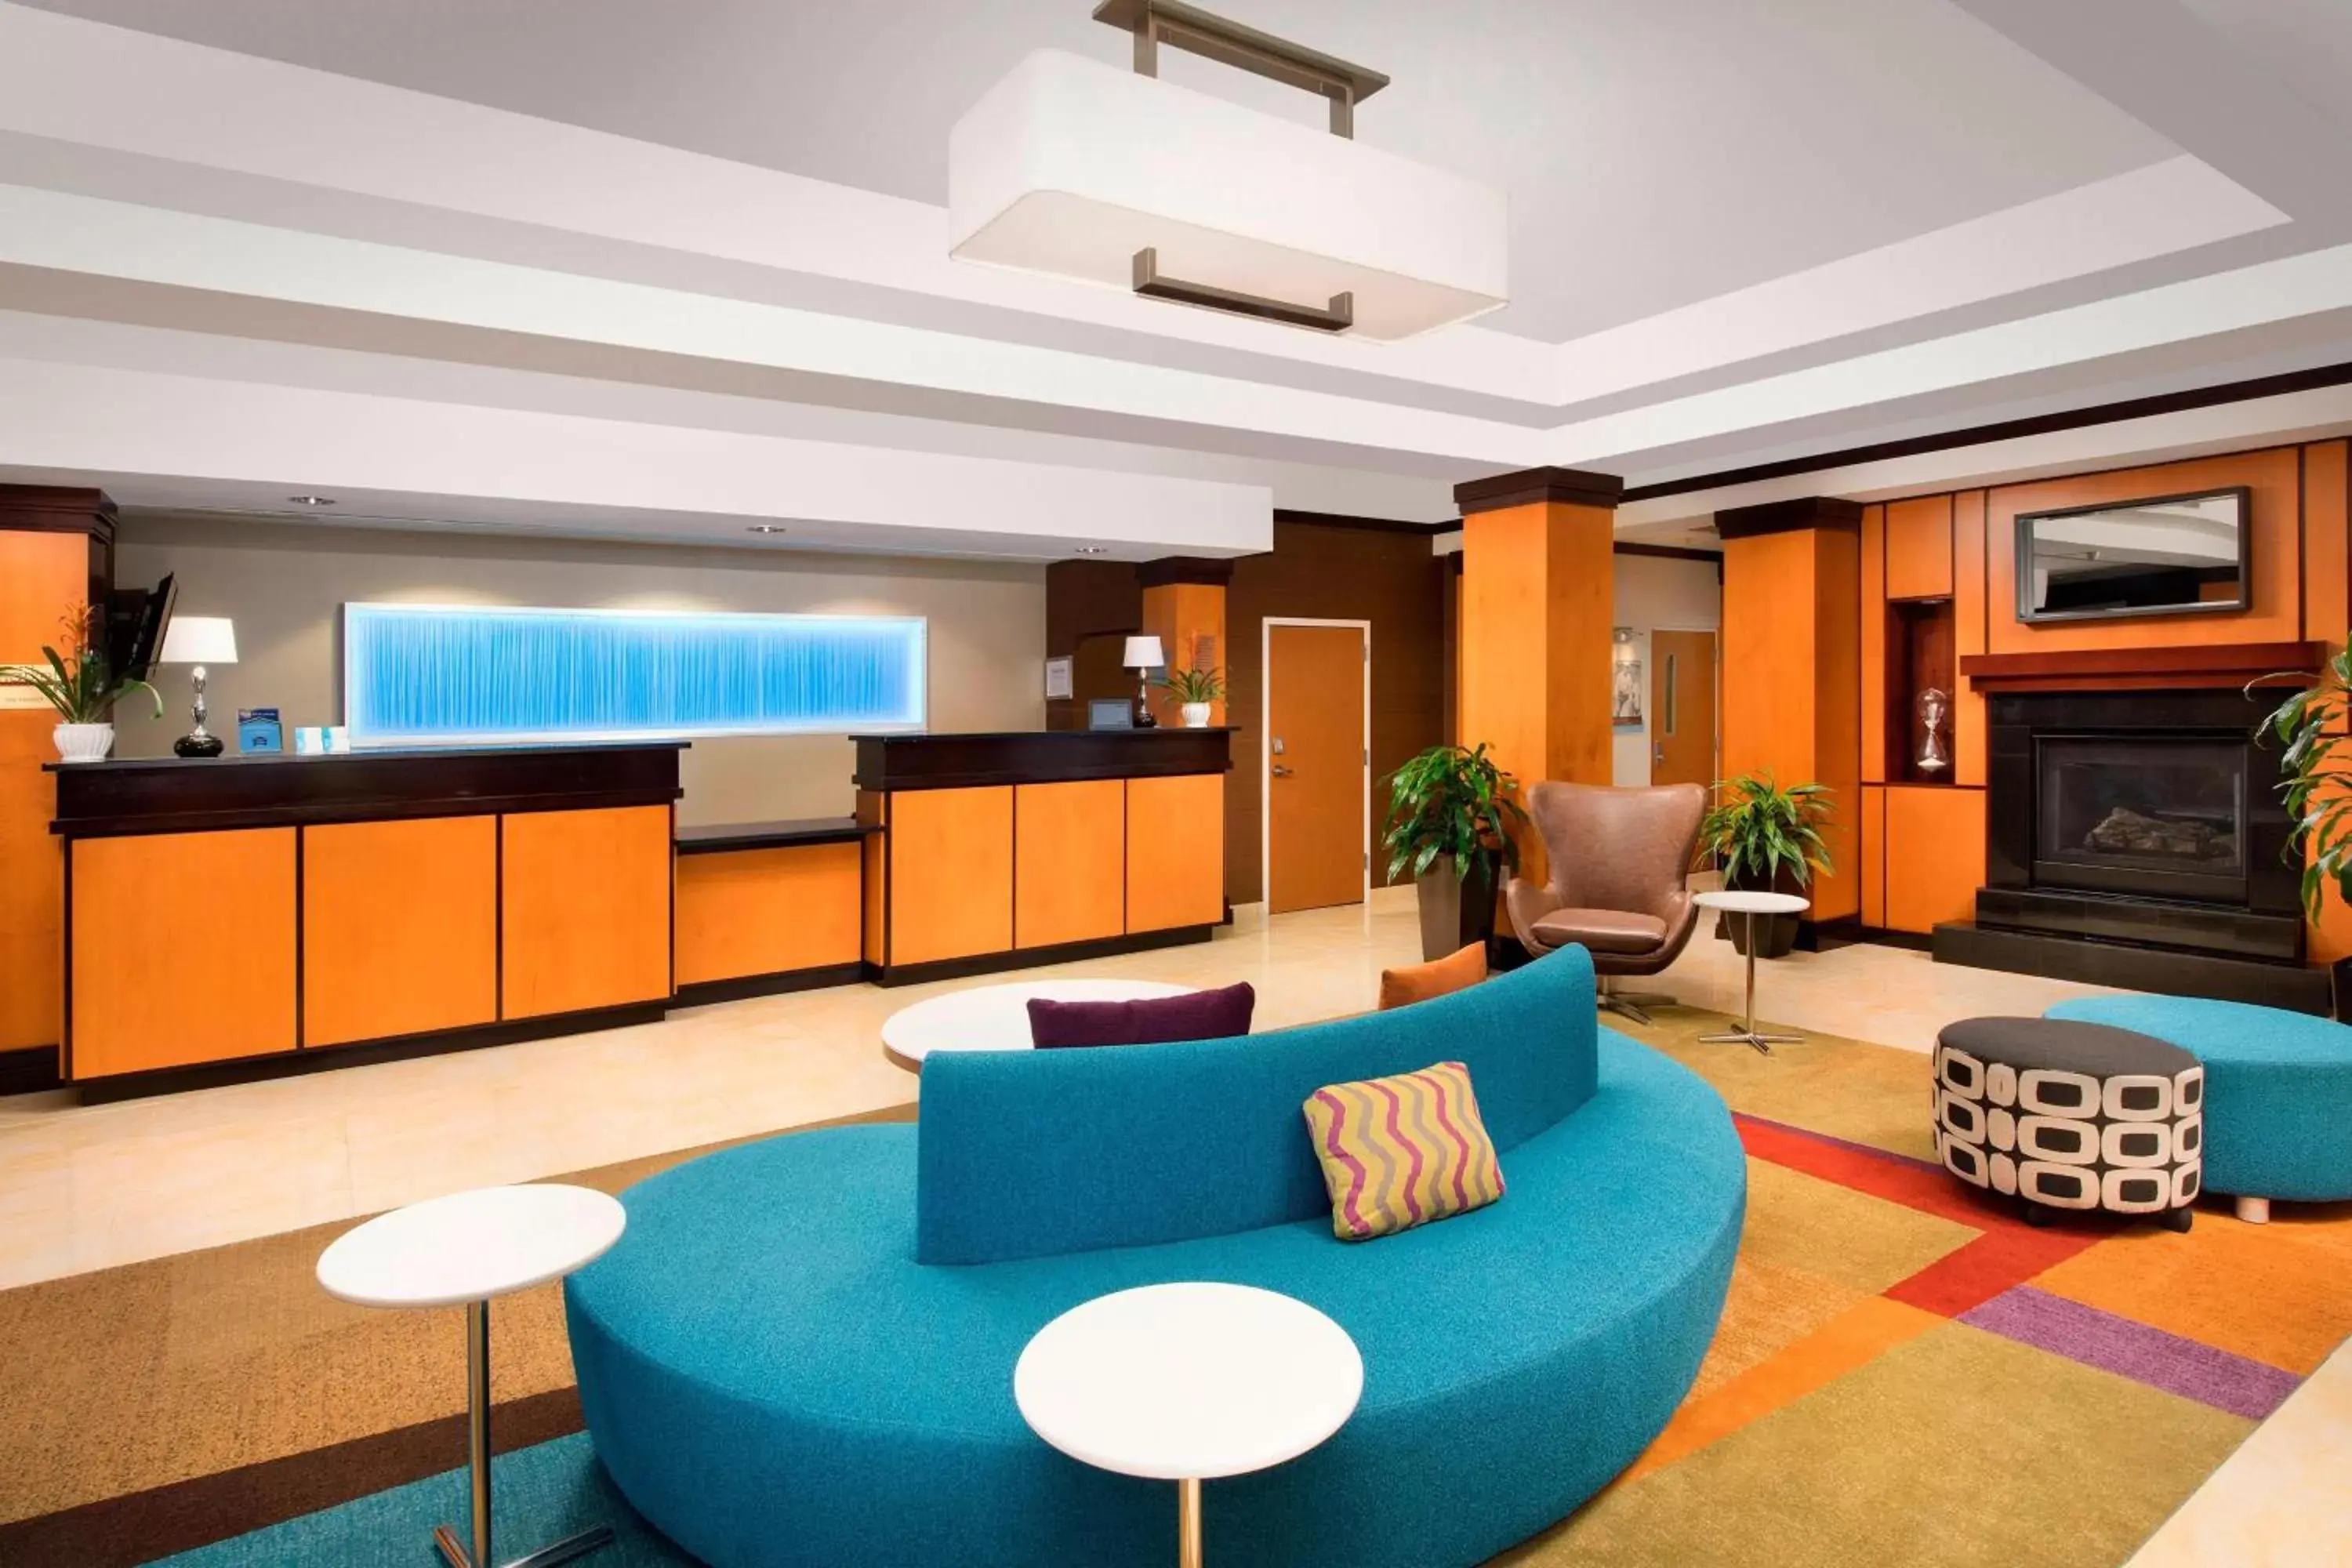 Lobby or reception, Lobby/Reception in Fairfield Inn & Suites-Washington DC